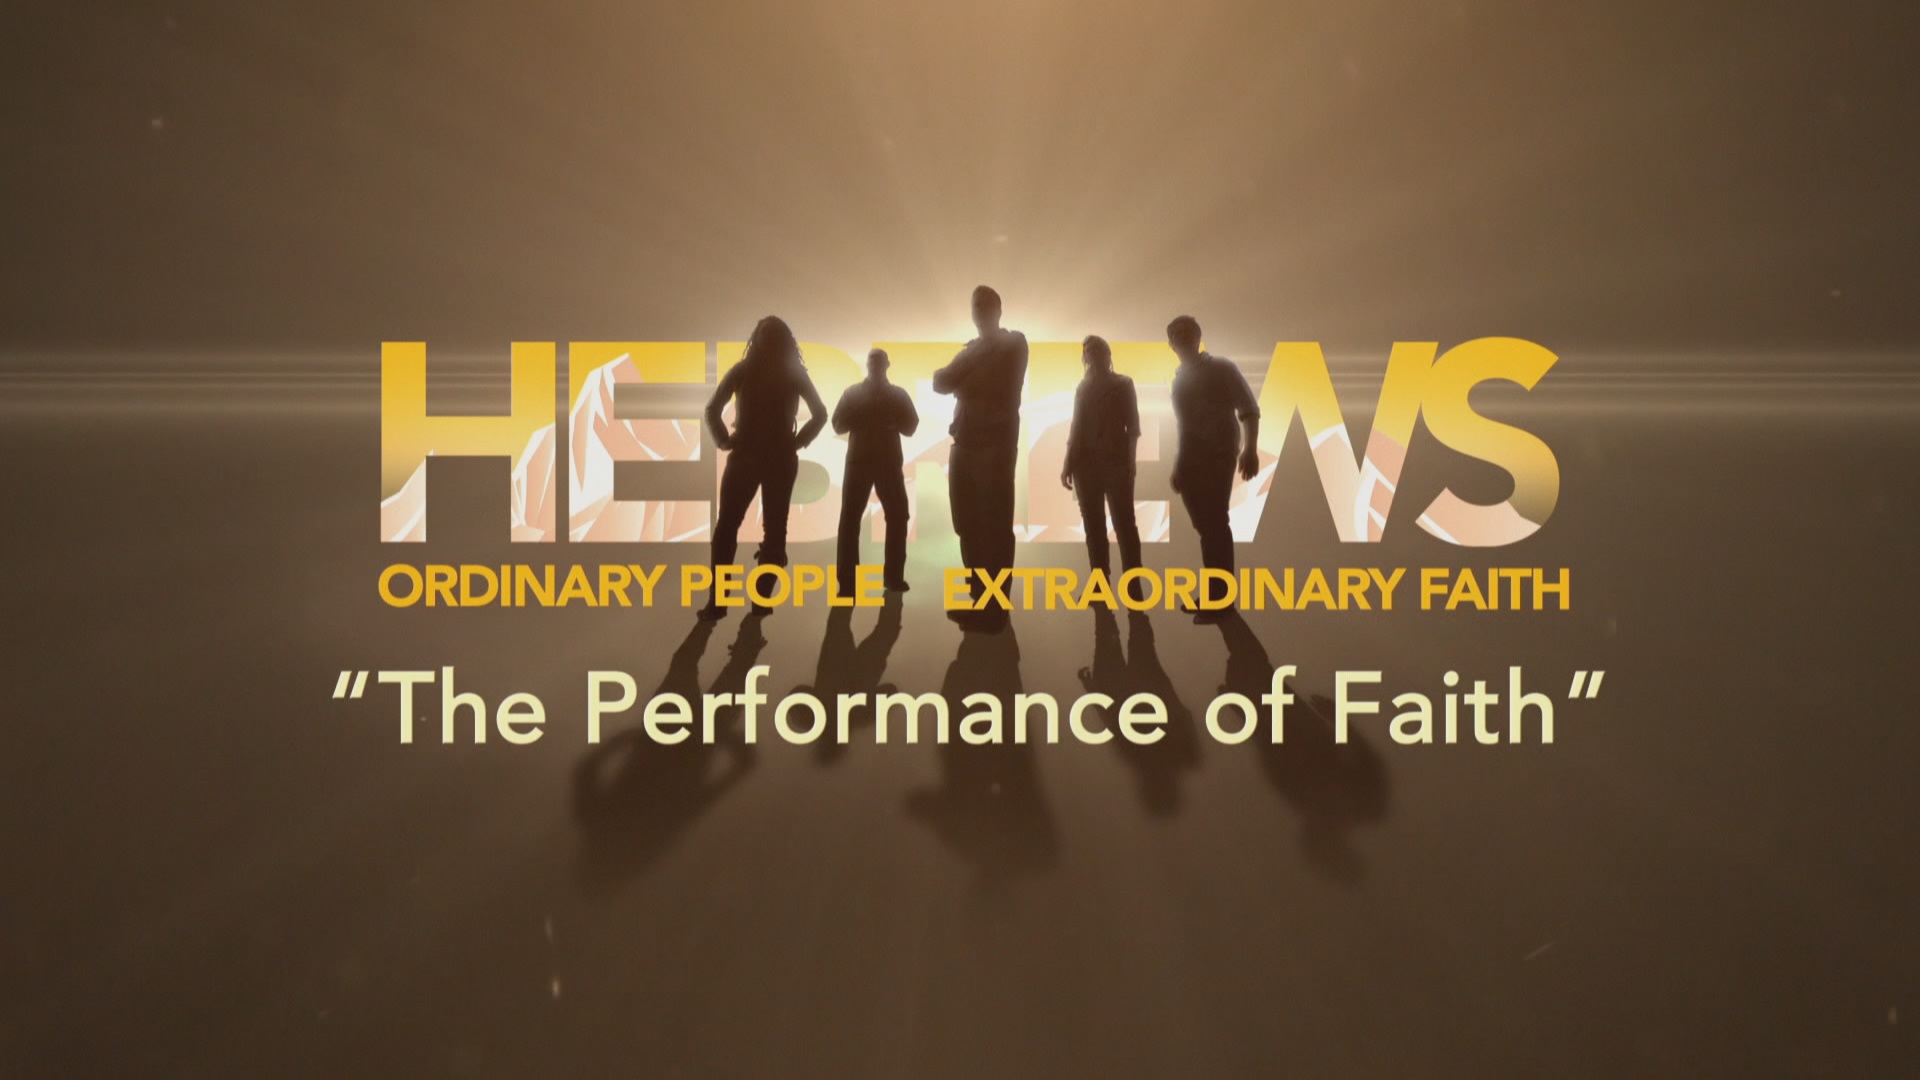 The Performance of Faith